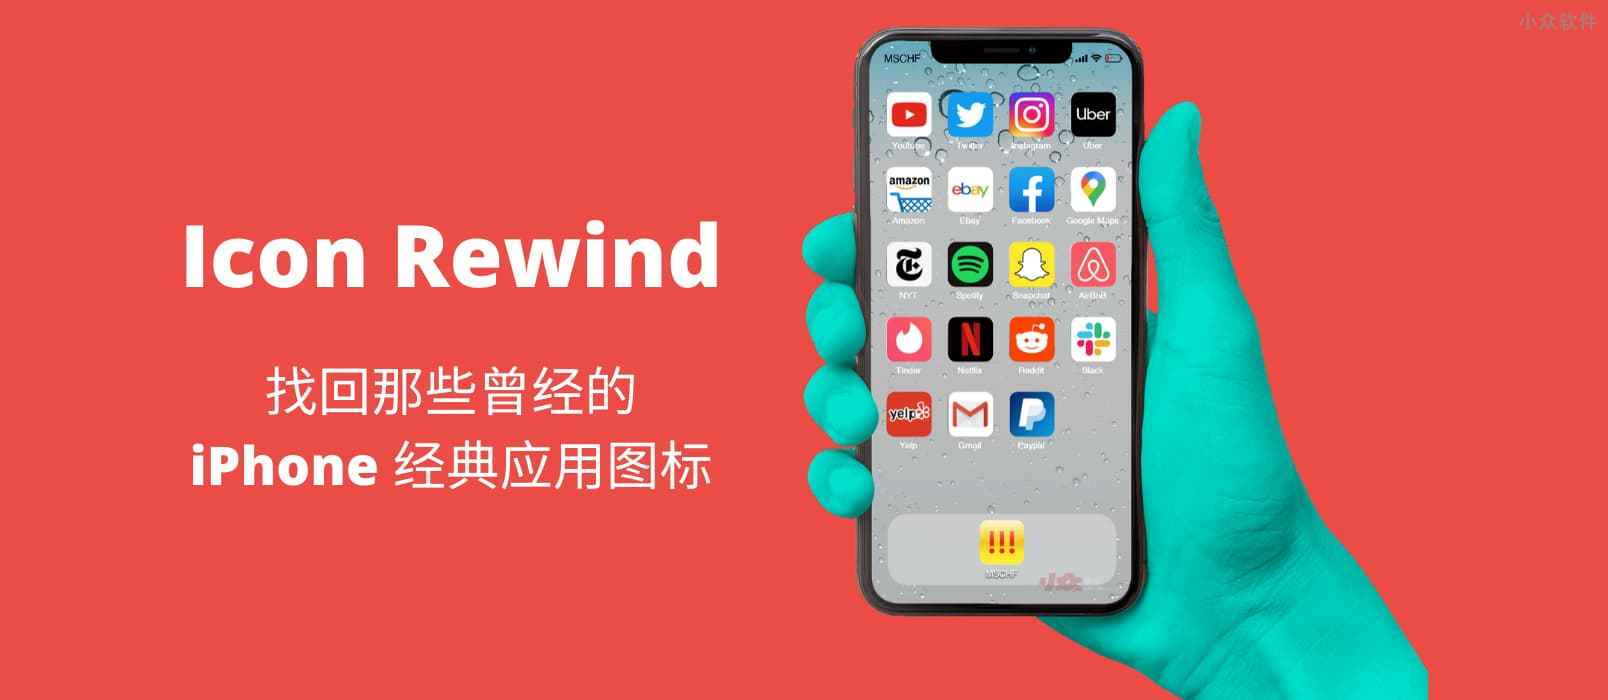 Icon Rewind – 找回曾经经典的 iPhone 应用图标